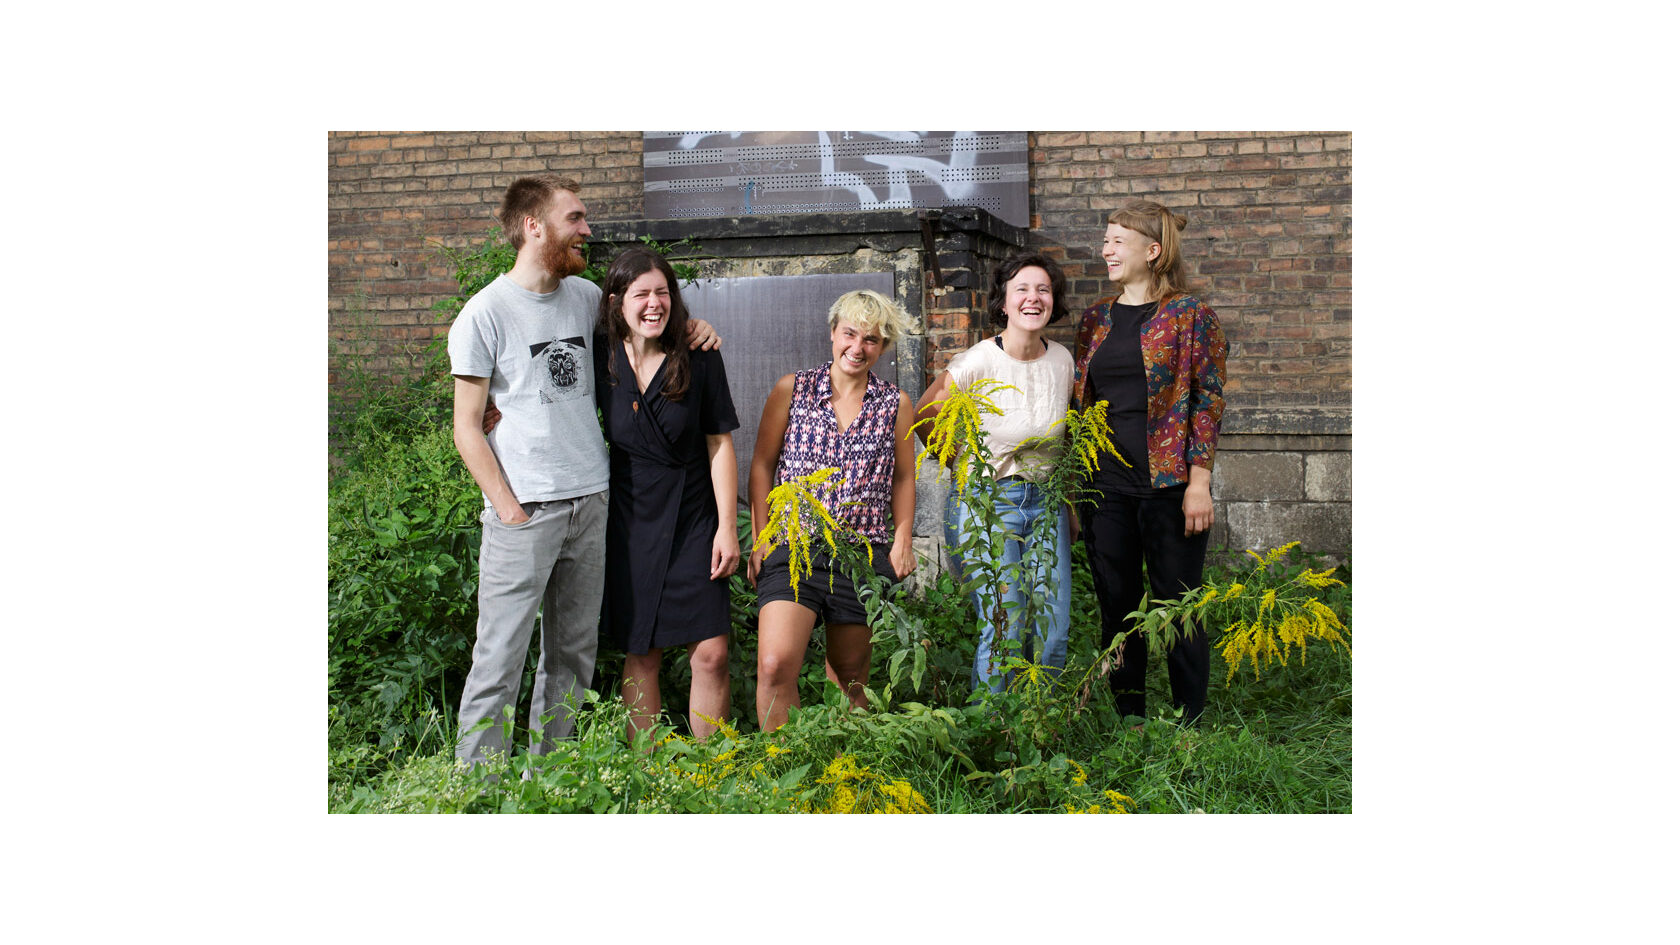 Portraitfoto der Initiatoren des Projekts "Wunschraumproduktion" vom Verein Tagträumer Kulturförderung e. V. Zu sehen sind Camillo Gulde, Johanna Bialek, Elisabeth Heinz, Milena Scipio und Lena Wegmann inmitten einer Grünfläche.